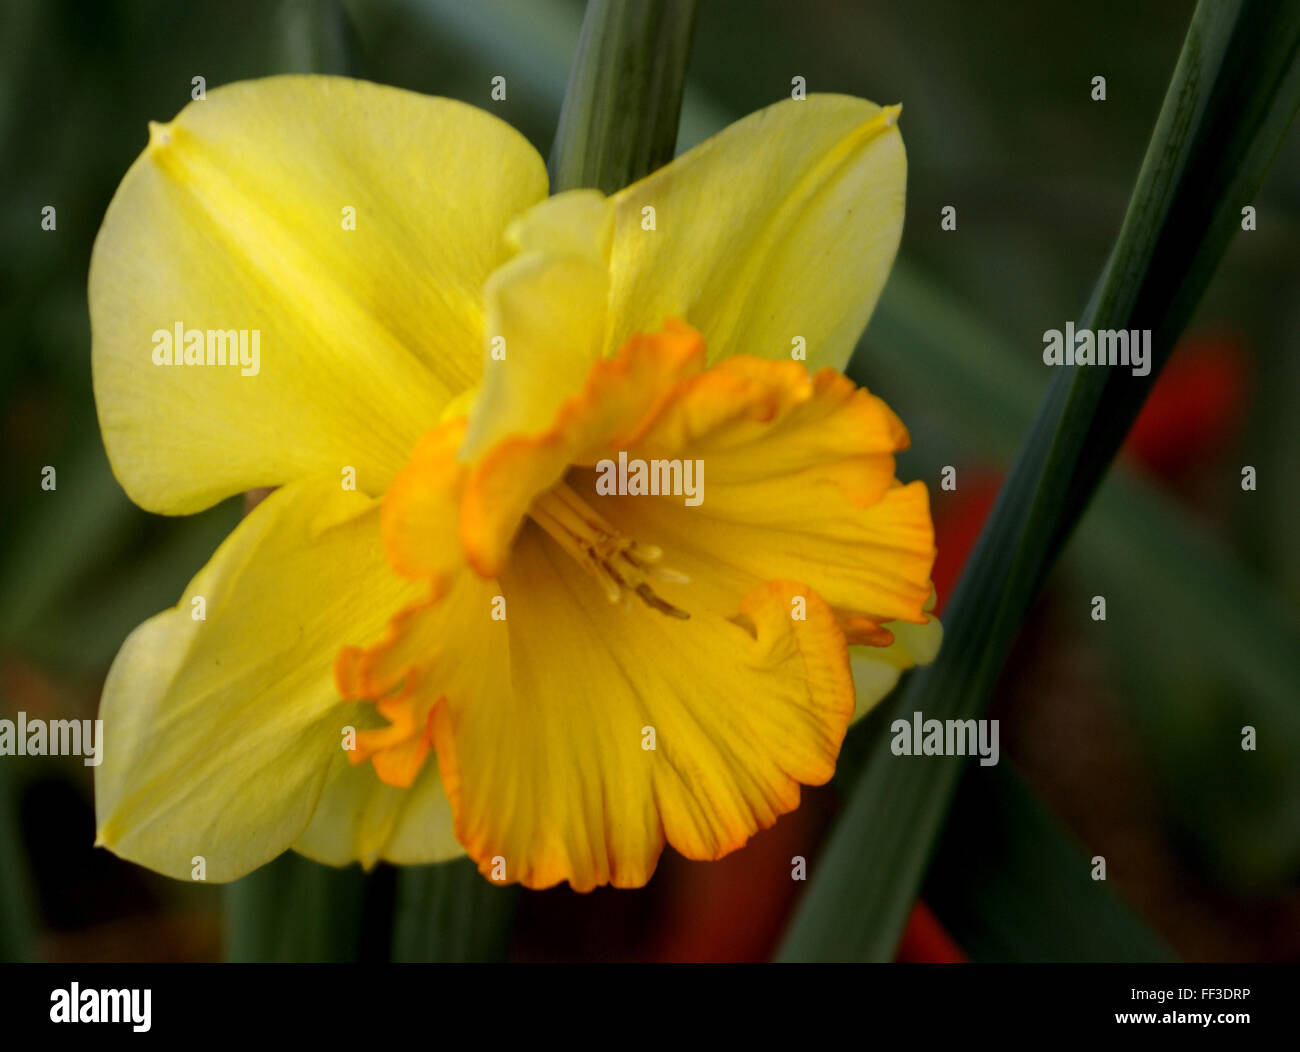 Narcissus pseudonarcissus jonquille sauvage, le carême, Lily, herbe vivace bulbeuse avec des fleurs jaunes sur une longue hampe florale, corona de long Banque D'Images